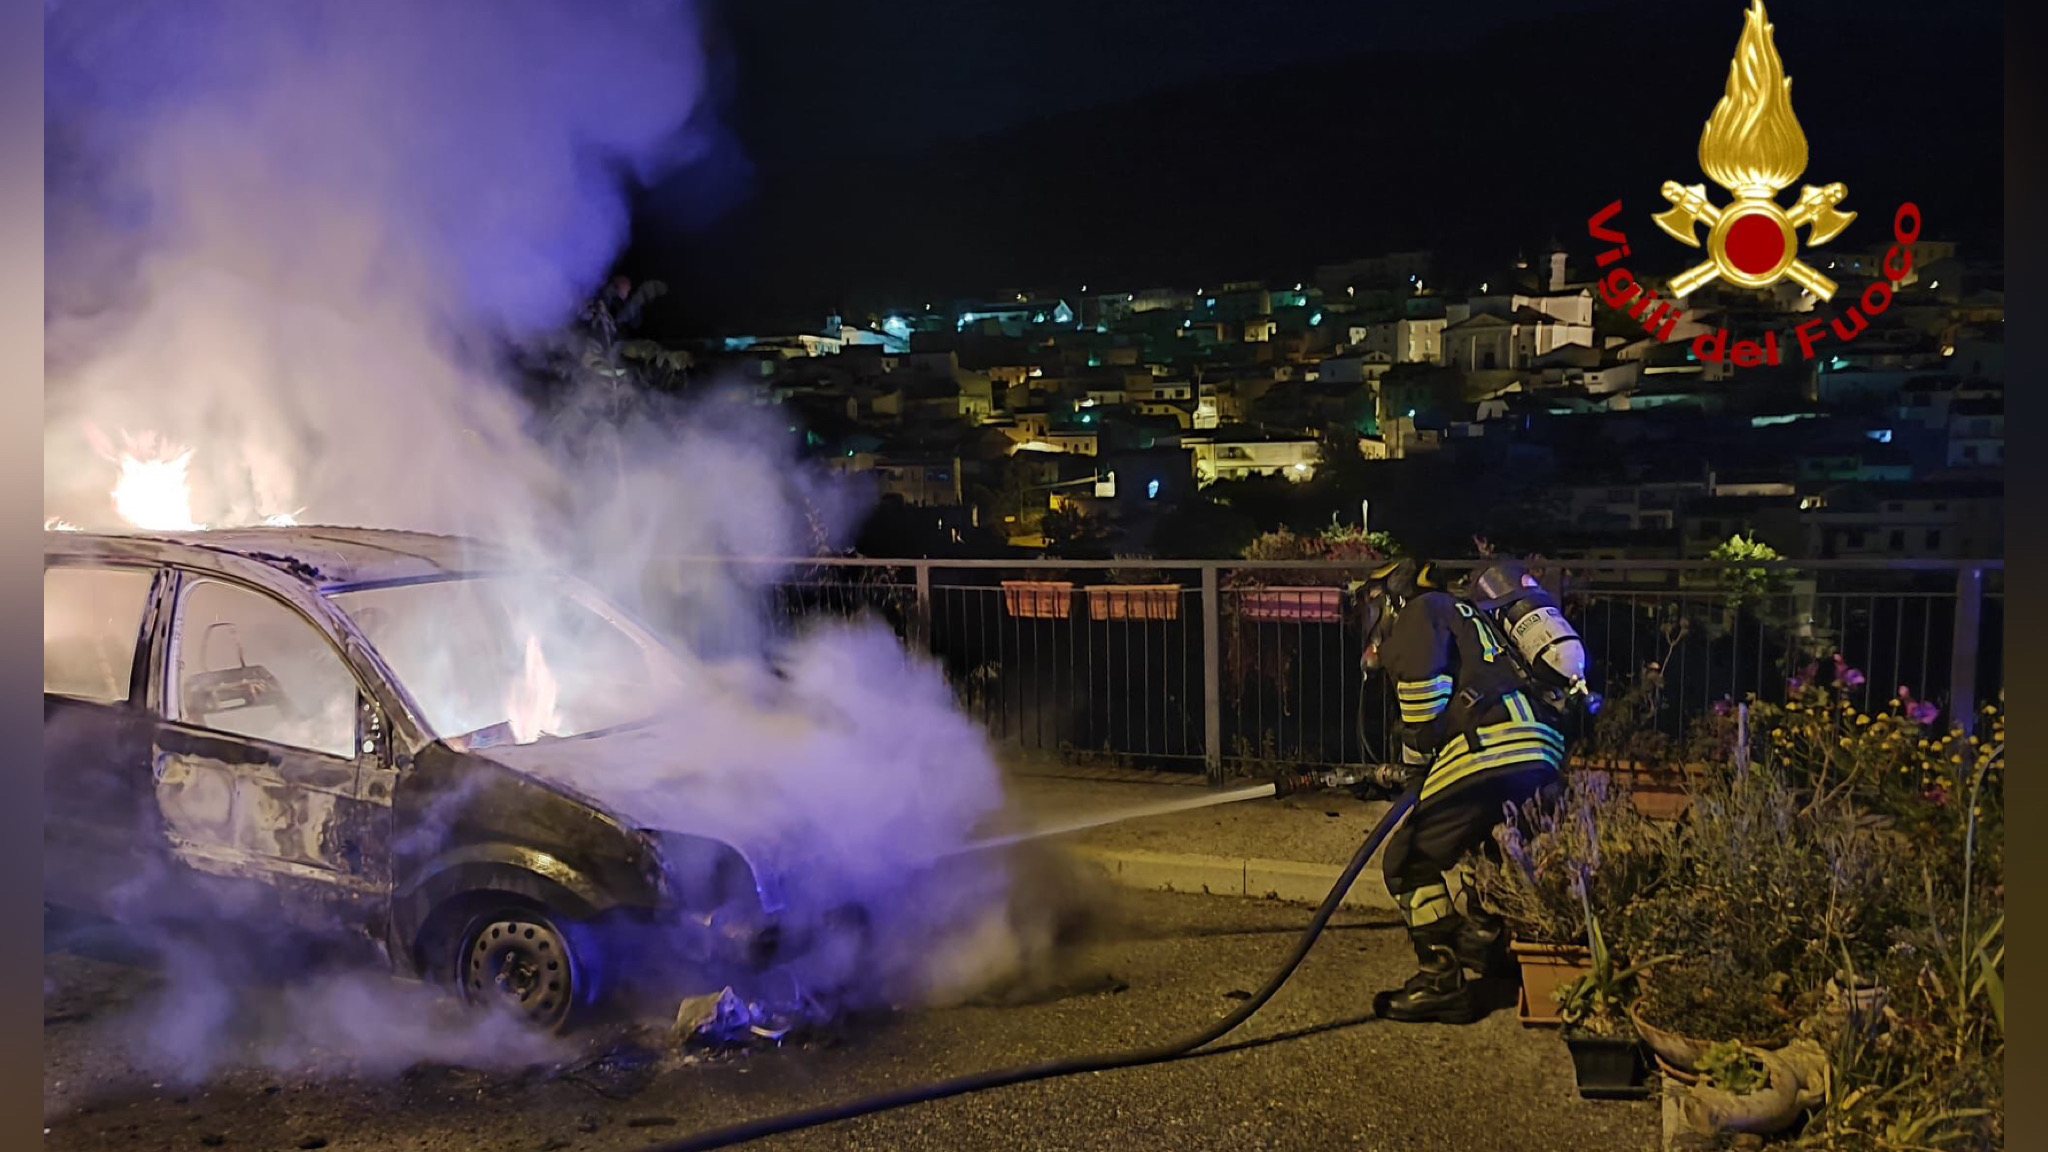 Attentato incendiario nella notte: coinvolte due auto